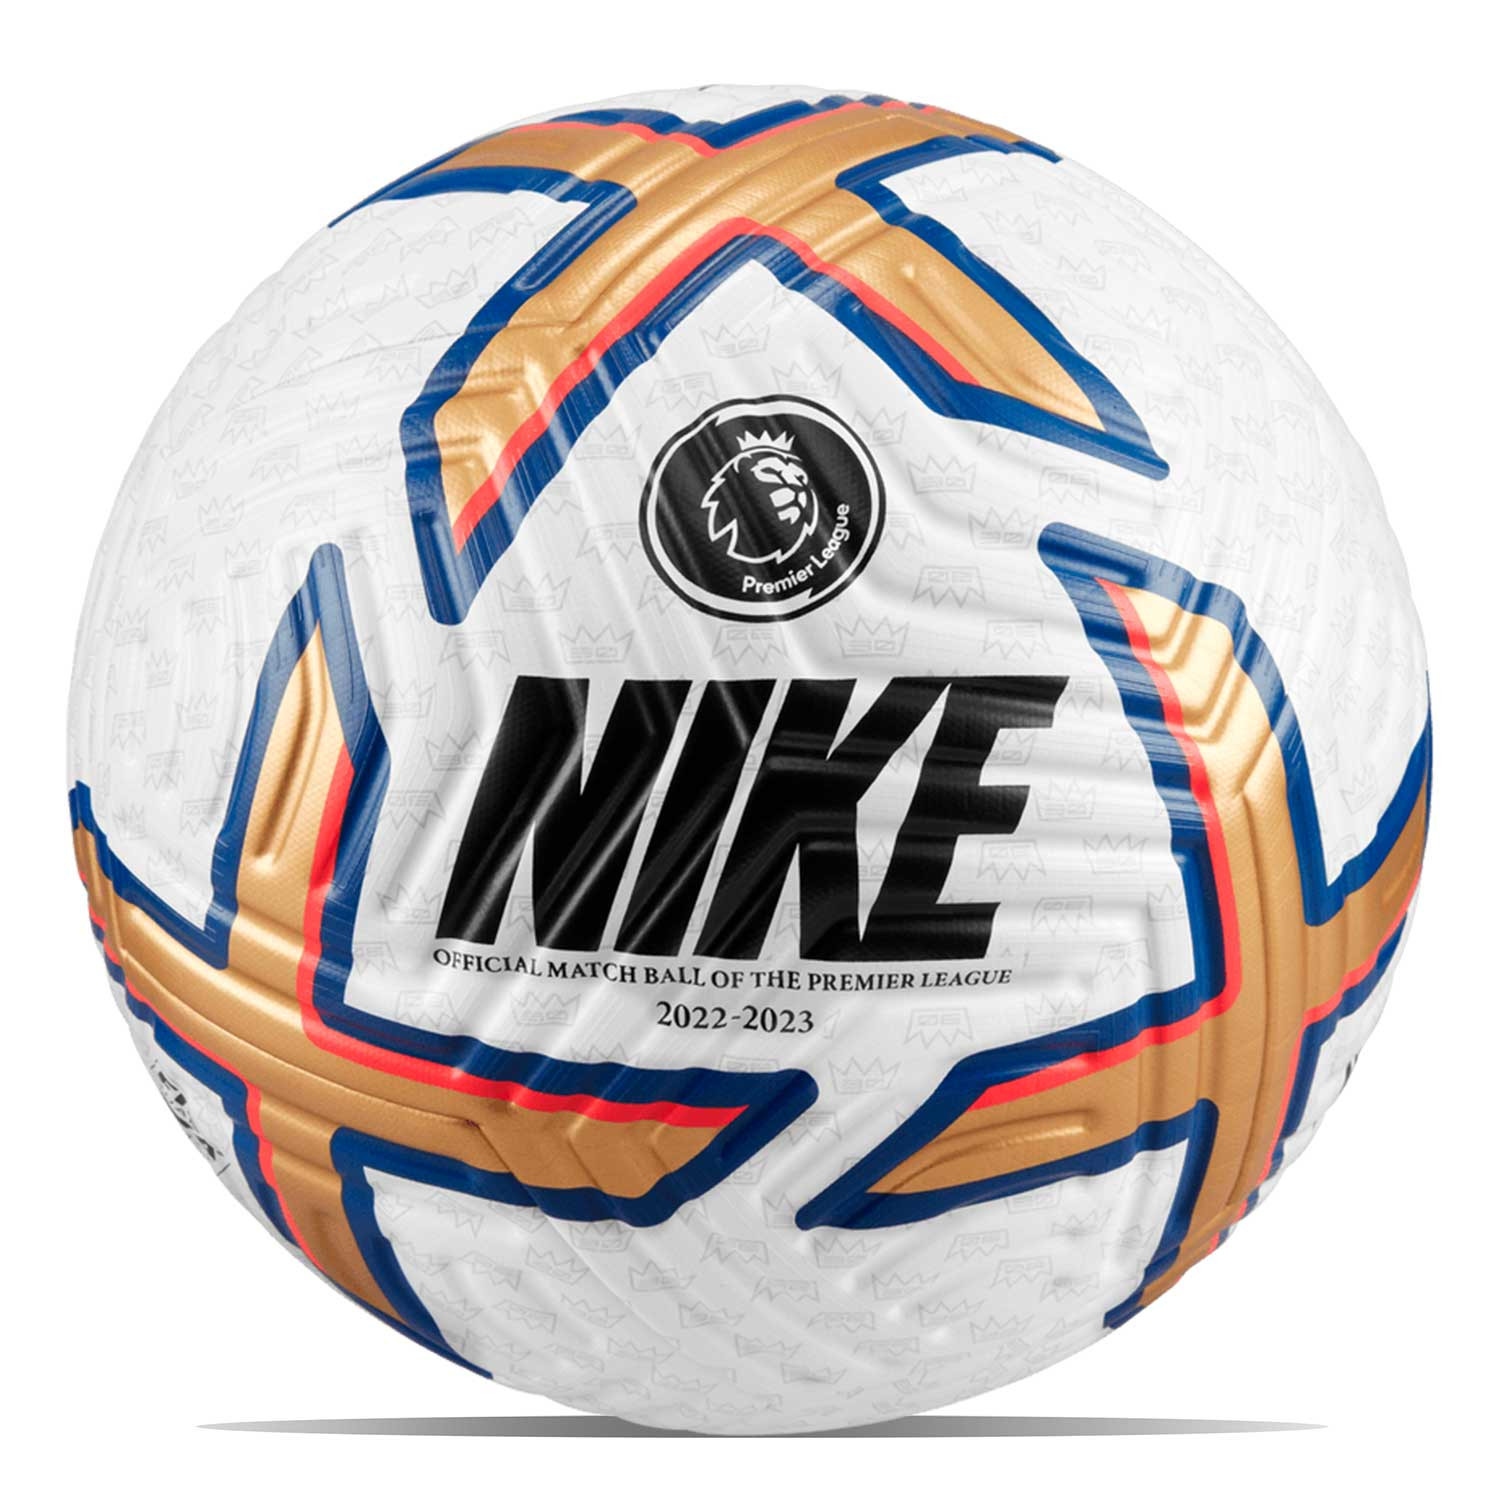 Balón Nike Premier League 2022 2023 Flight talla 5 futbolmania